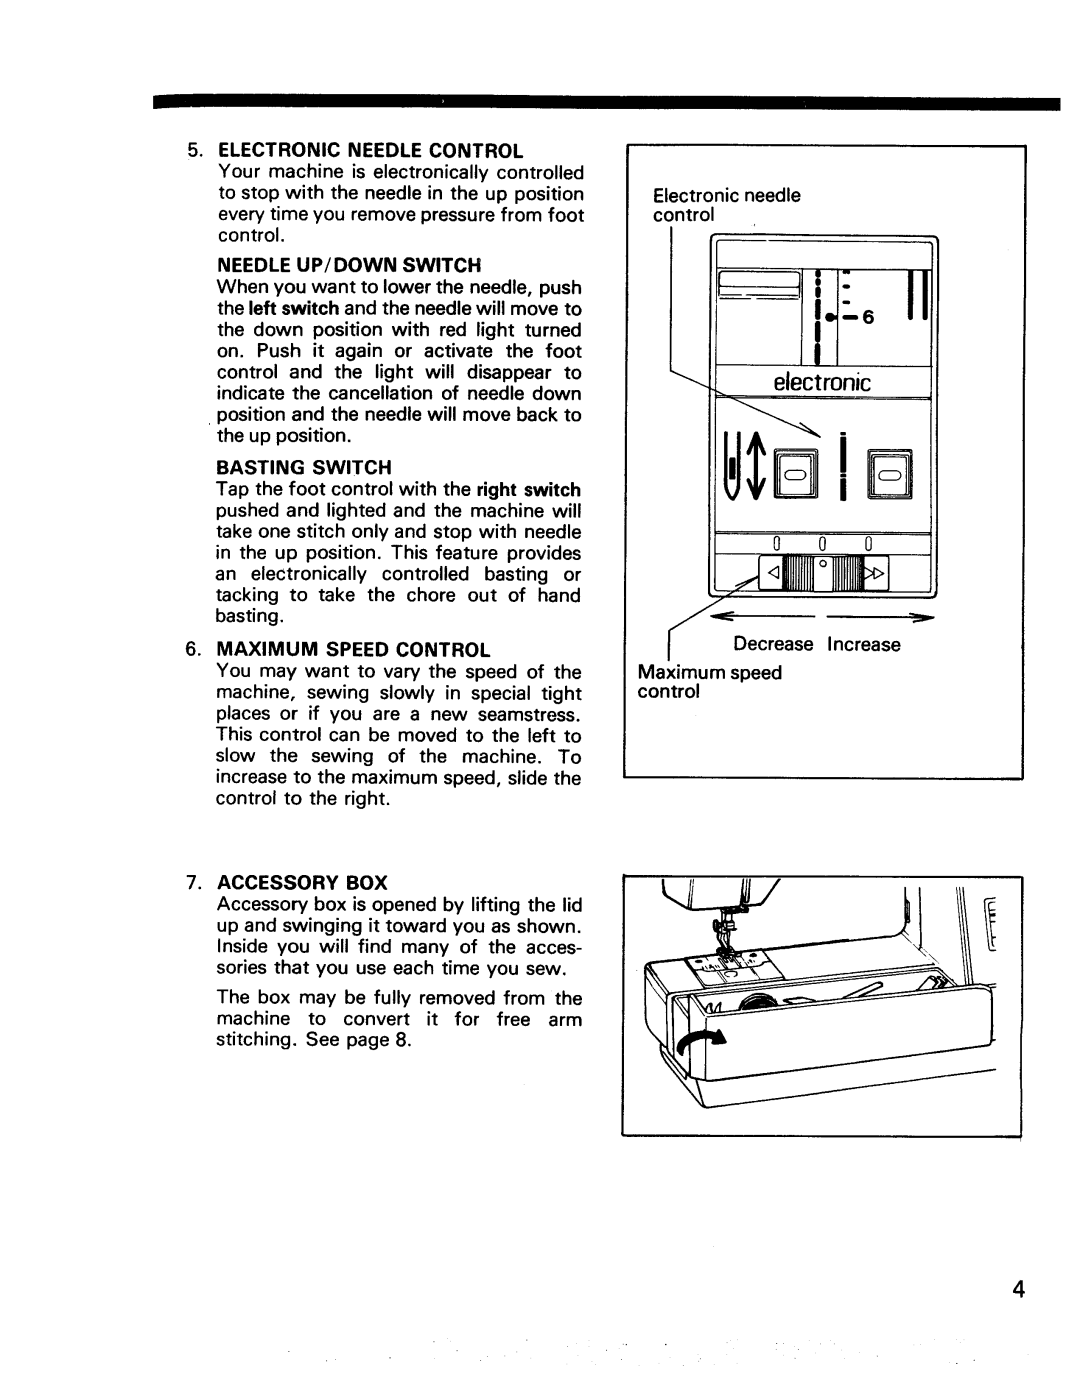 Kenmore 17922, 17920 manual electronic, i.II, 111III11II1 